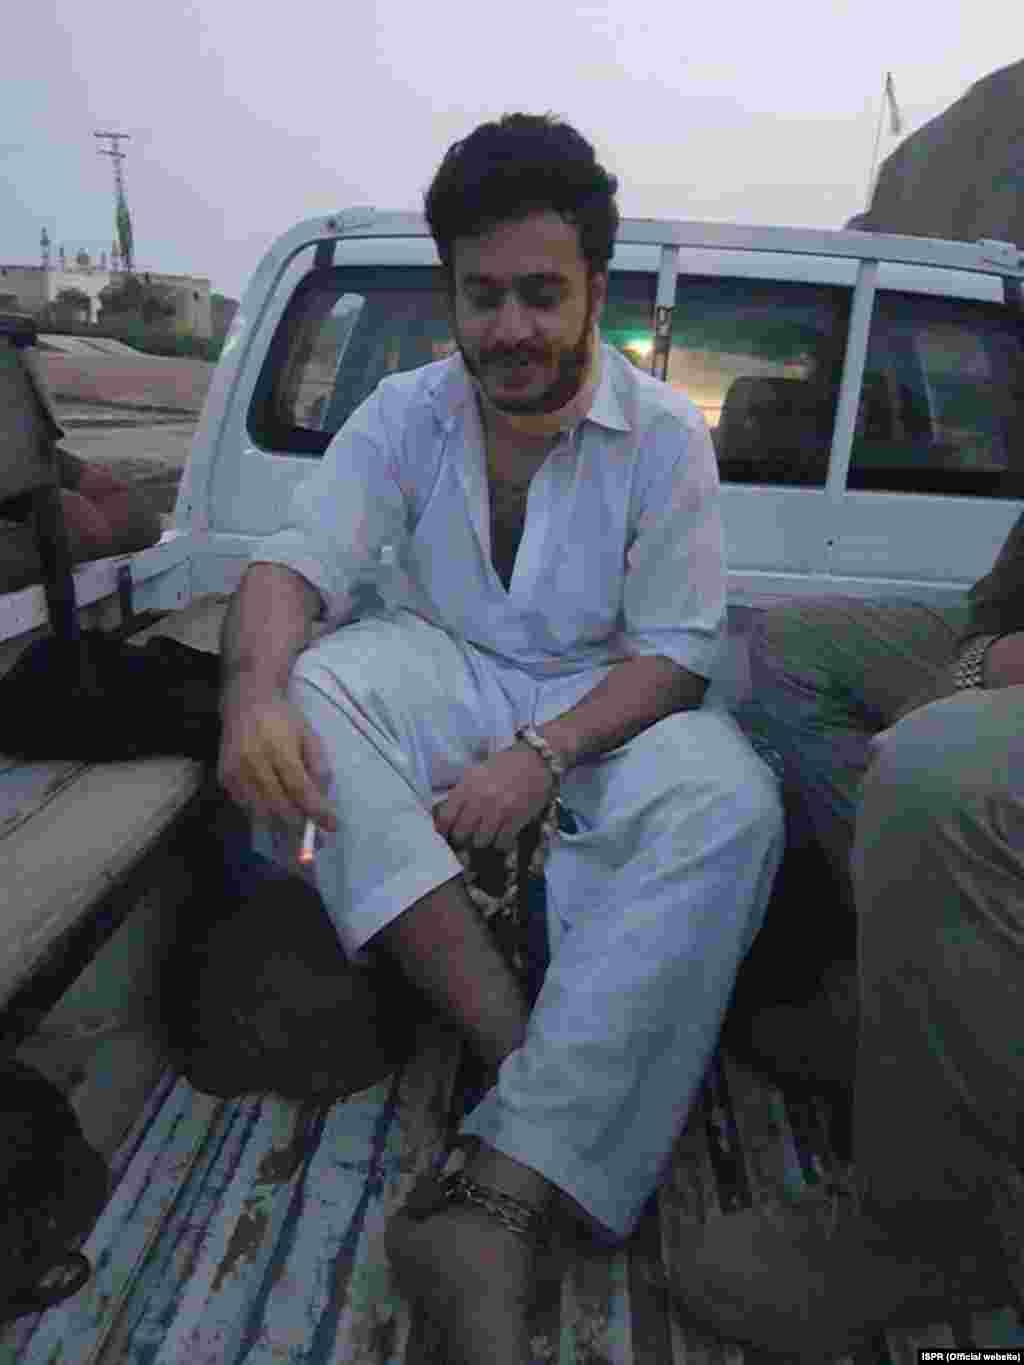 اویس شاہ کو 20 جون کو کراچی کے علاقے کلفٹن سے اغوا کیا گیا تھا اور اسے حالیہ برسوں میں اغوا کی بڑی وارداتوں میں سے ایک قرار دیا جا رہا تھا۔